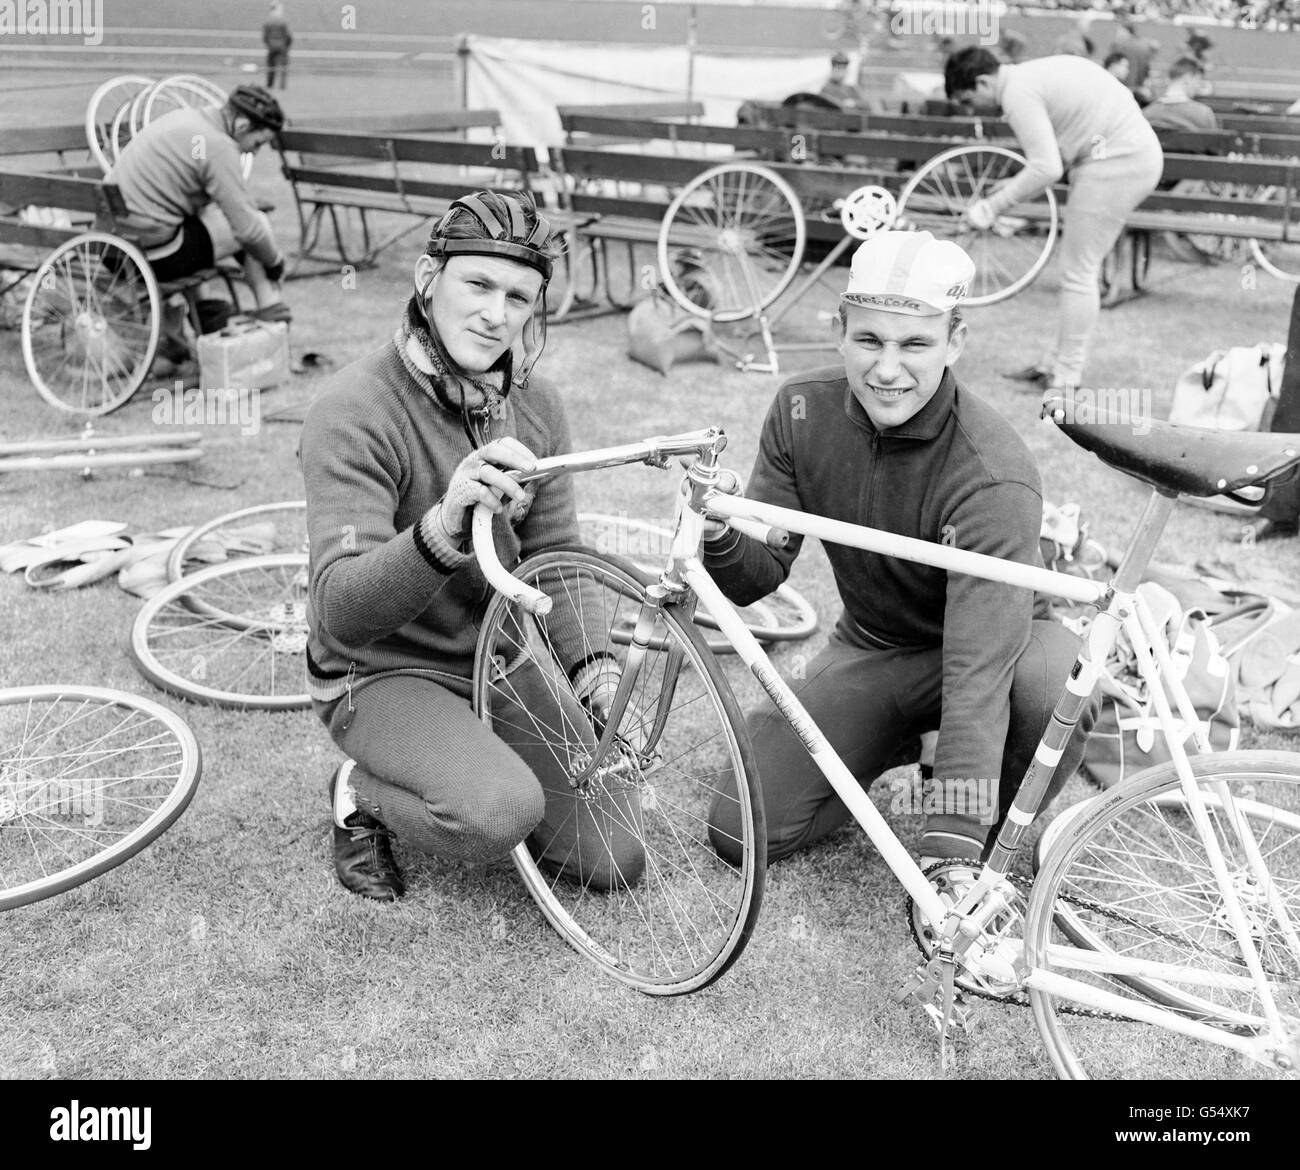 Cyclisme - Southern Counties Cycling Union International cycle Racing Festival - Herne Hill, Londres.Deux membres du contingent allemand, Karl Heinz-Peter, à gauche (Allemagne de l'est), et Gunter Kaslowski (Allemagne de l'Ouest). Banque D'Images